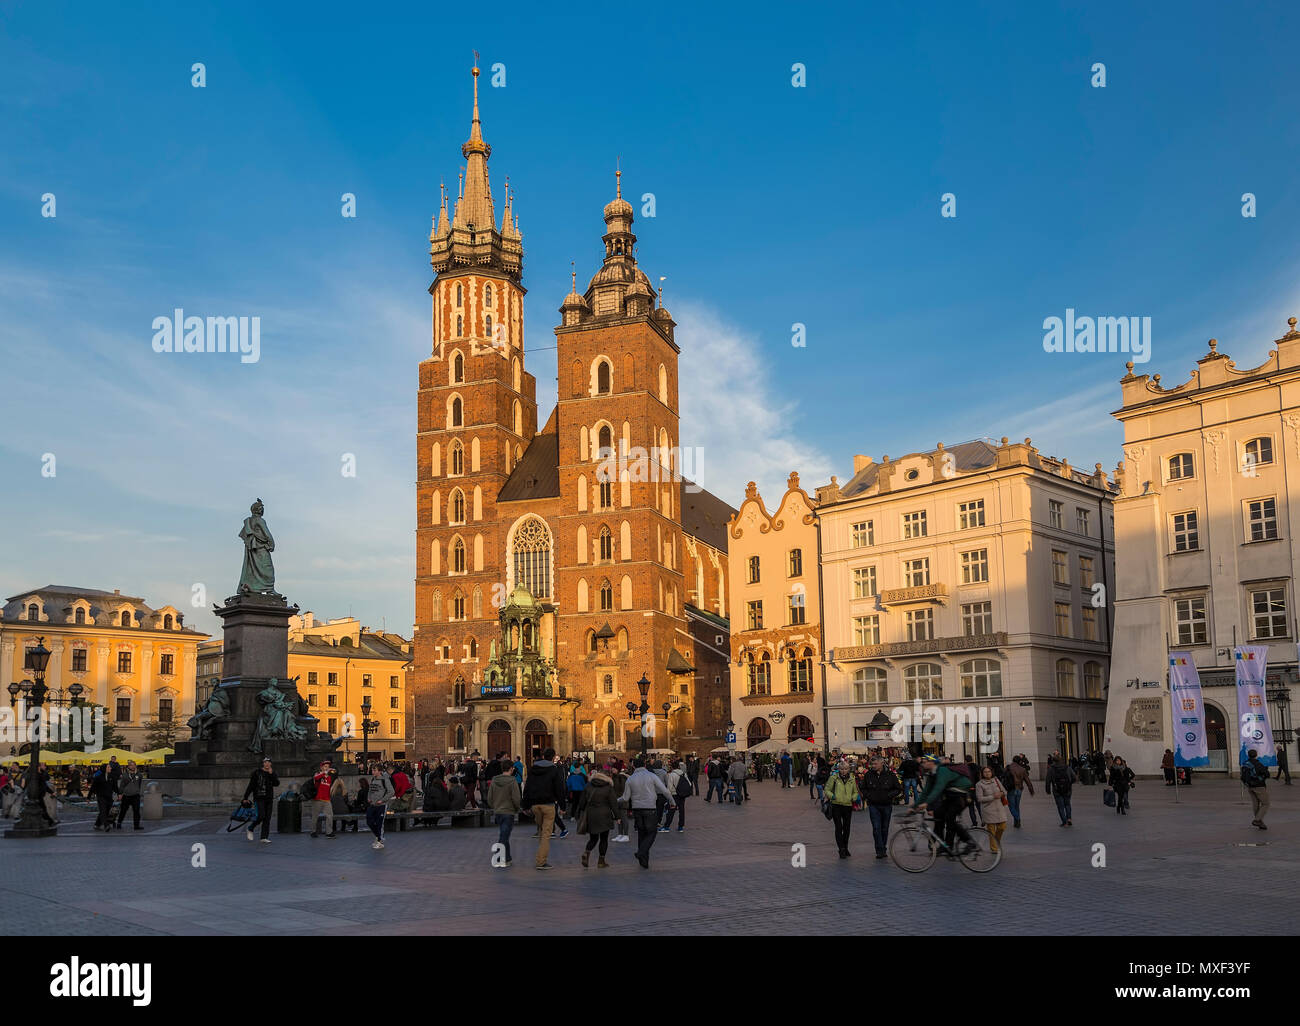 Krakau, Polen - 26. OKTOBER 2015: St. Mary's Church und das Denkmal von Adam Mickiewicz auf dem Marktplatz in Krakau. Polen Stockfoto